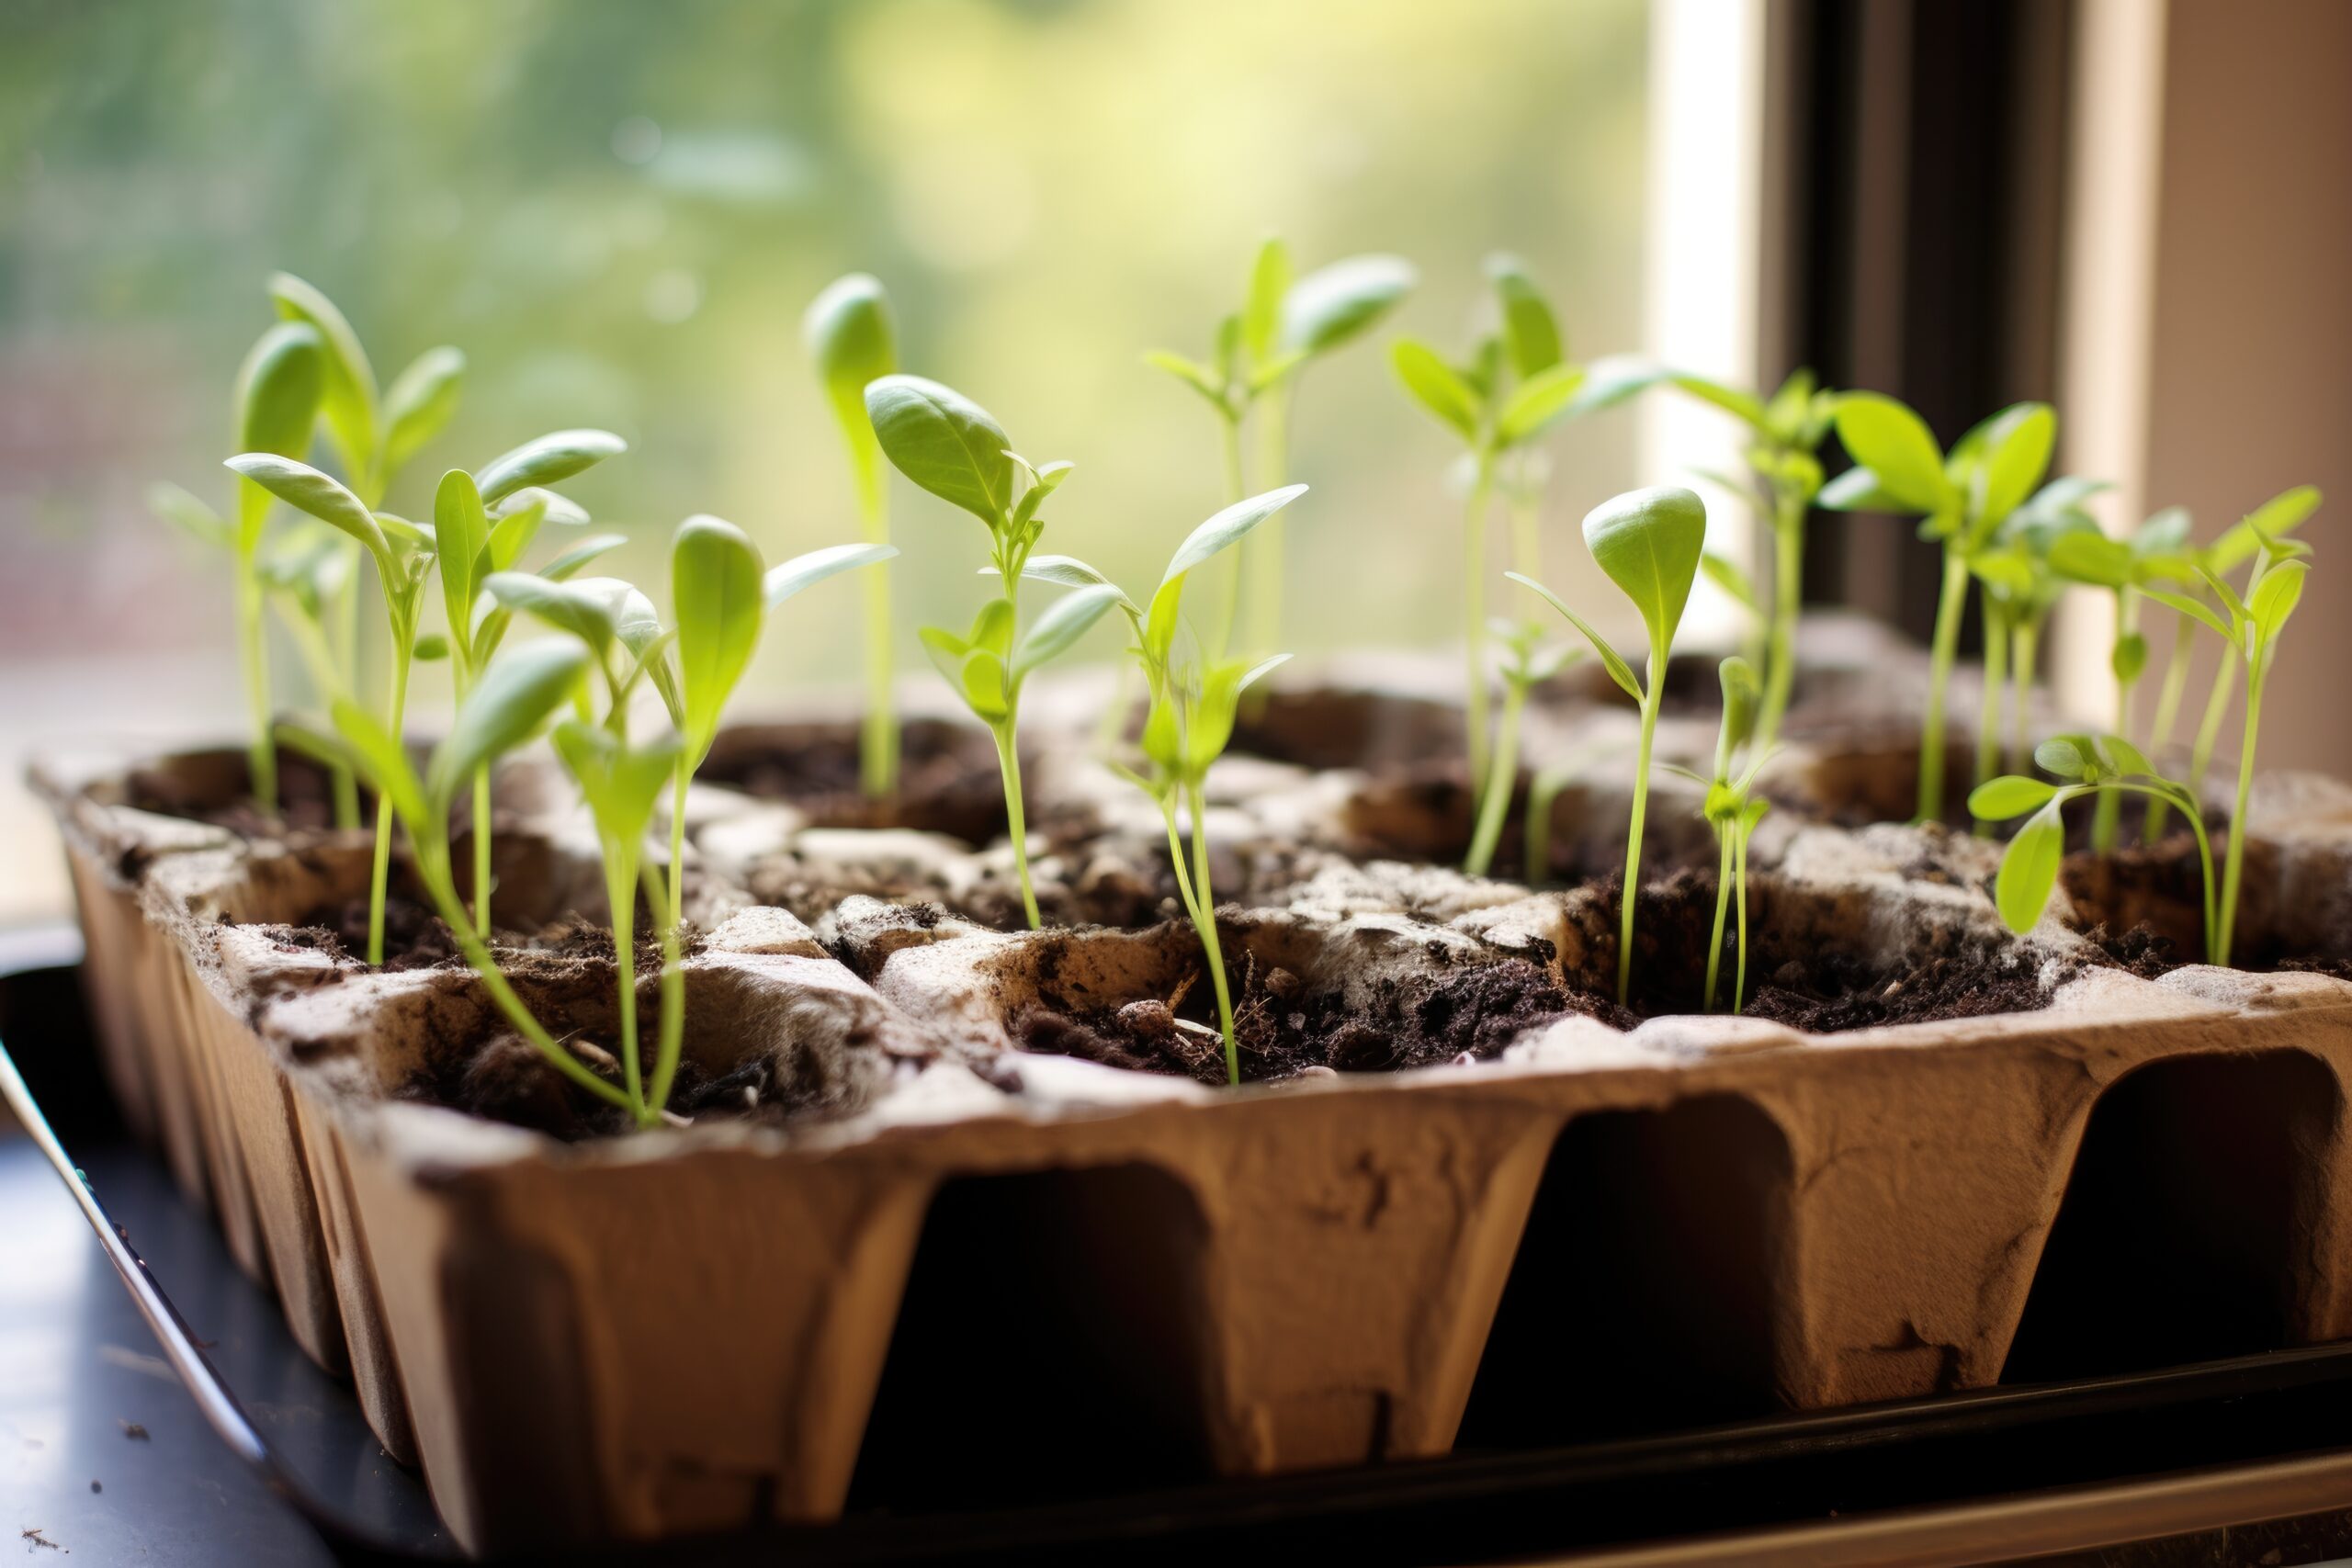 Izposodi semena, zamenjaj sadike, vzgoji rastline in deli pridelke